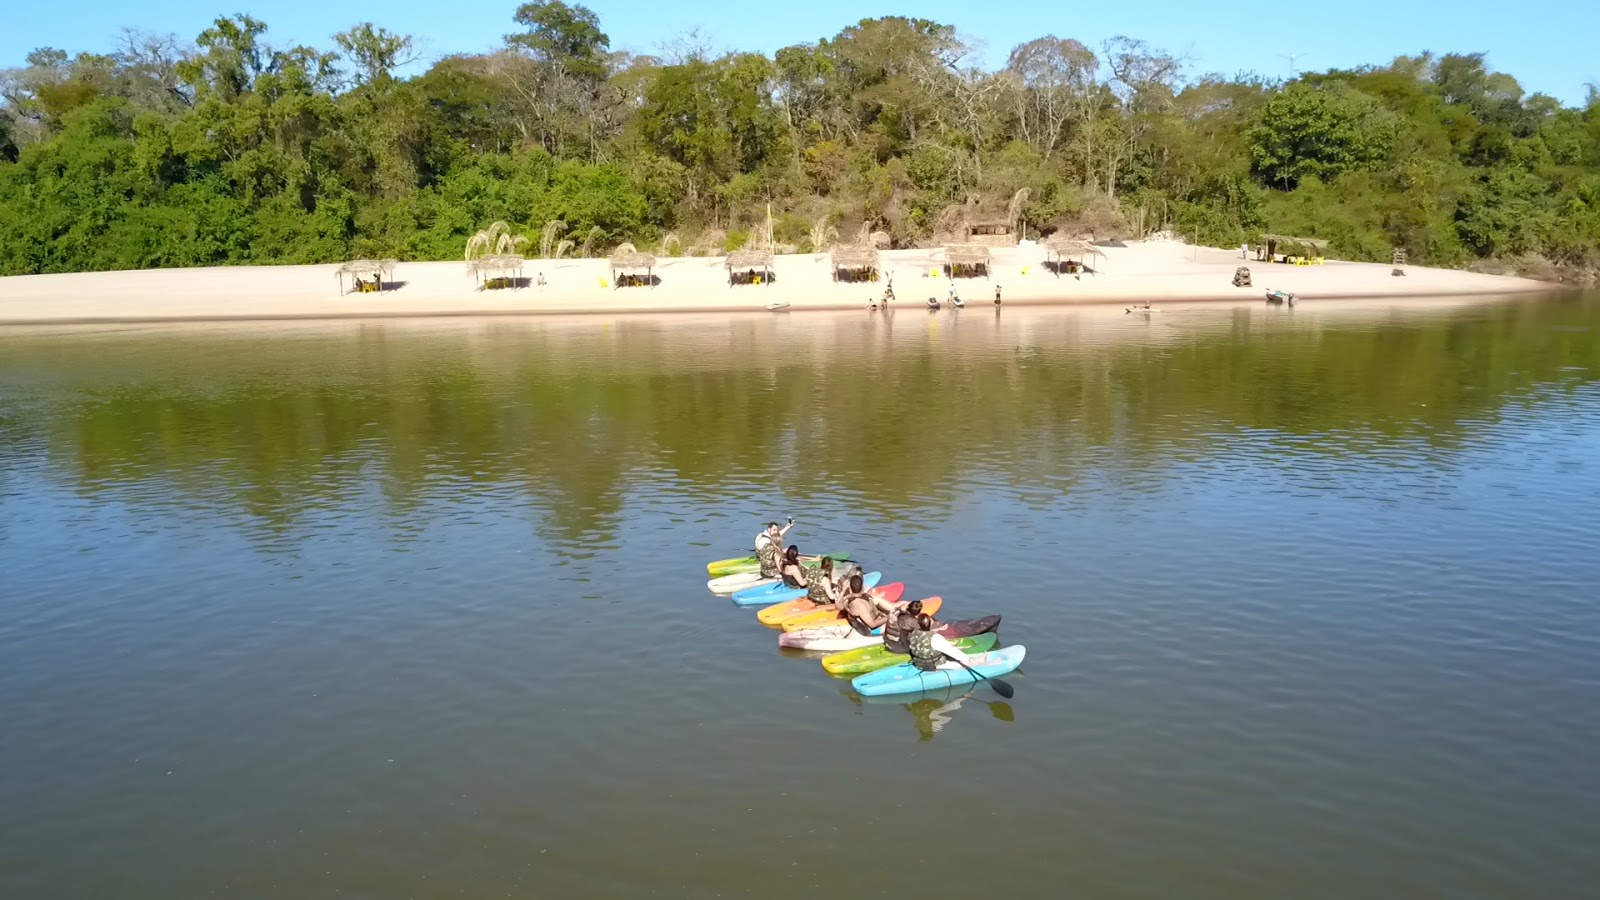 Parque das Águas Quentes, de Barra do Garças, deve ser reaberto em até 30  dias - Araguaia Notícia